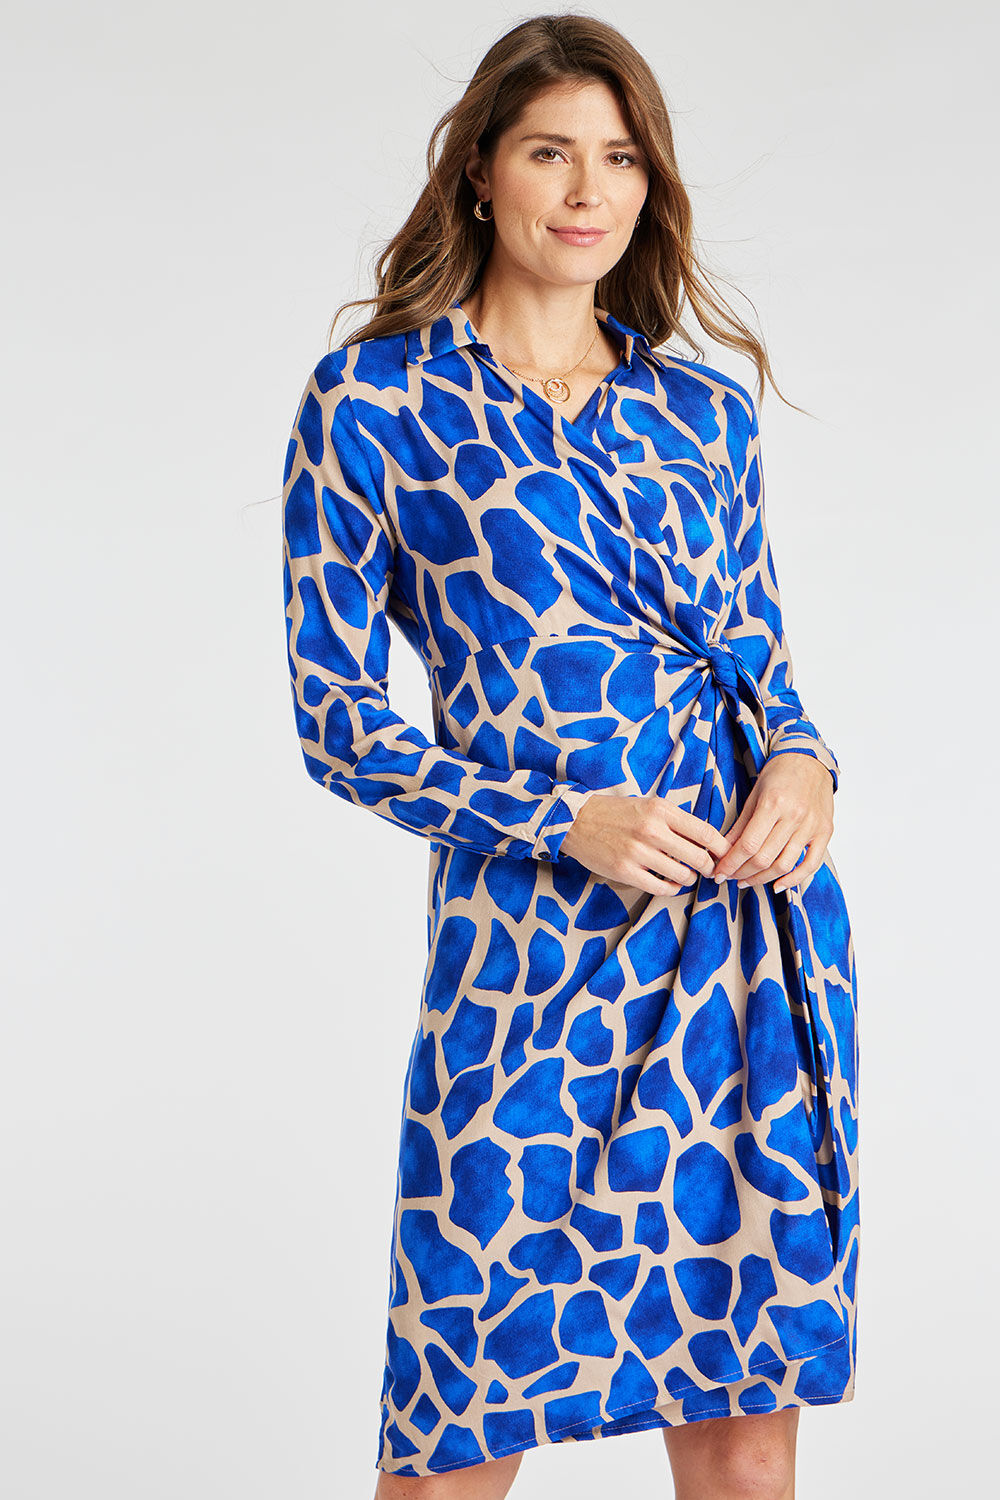 Bonmarche Blue Giraffe Print Wrap Front Dress, Size: 16